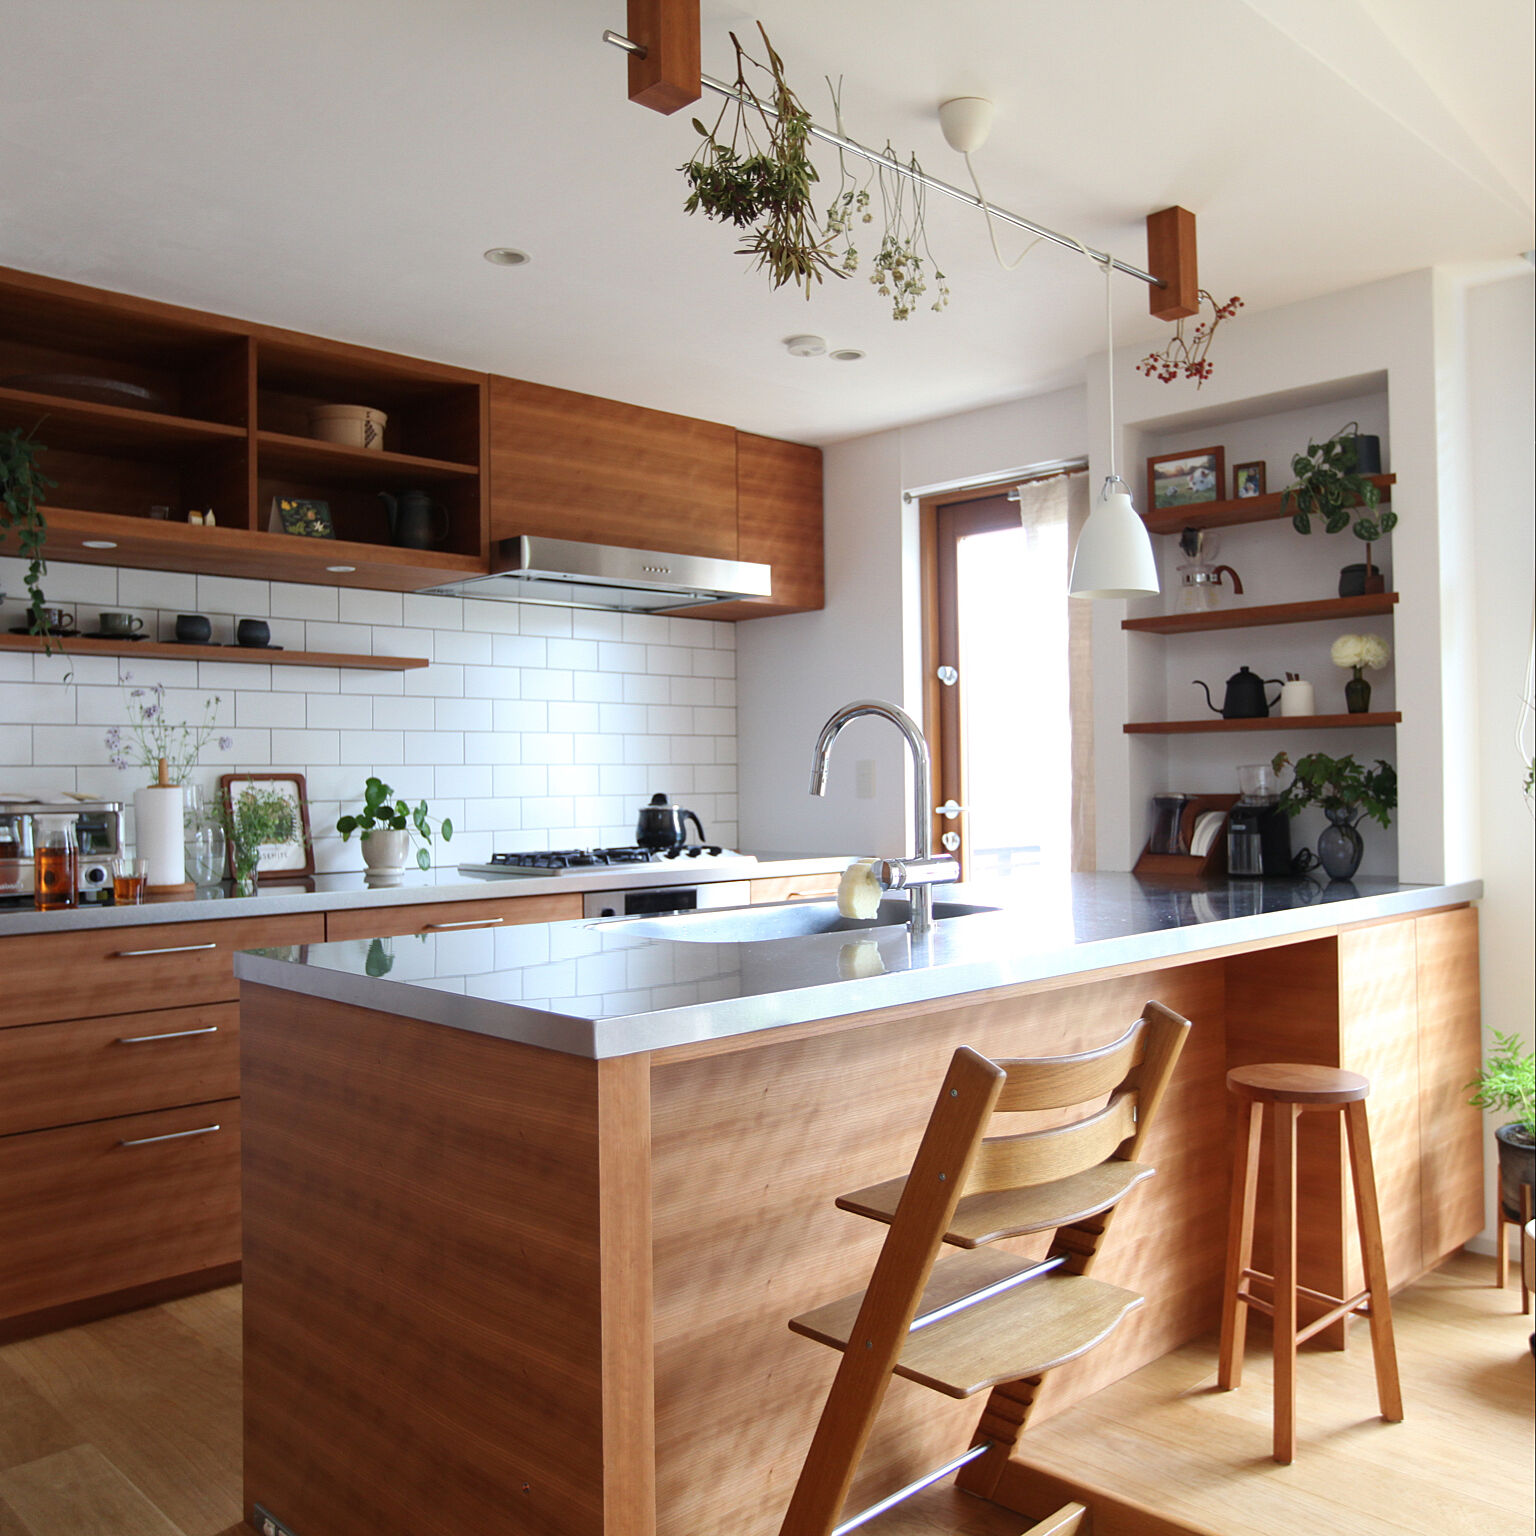 キッチンのスタイルでこんなに違う レイアウトの実例集 Roomclip Mag 暮らしとインテリアのwebマガジン